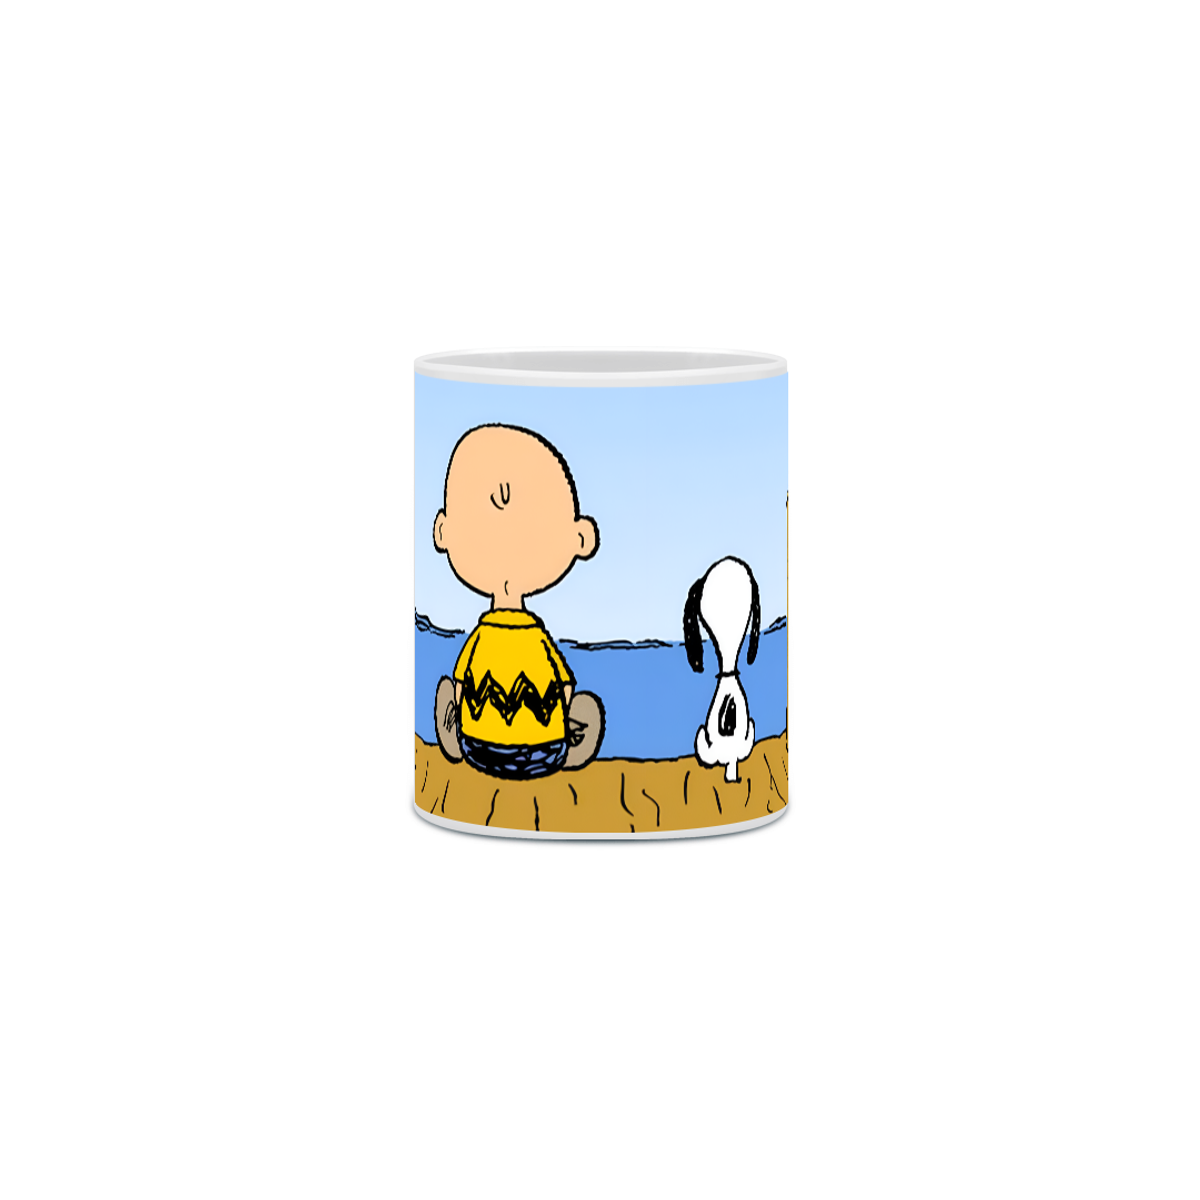 Nome do produto: Caneca Snoopy and Charlie Brown